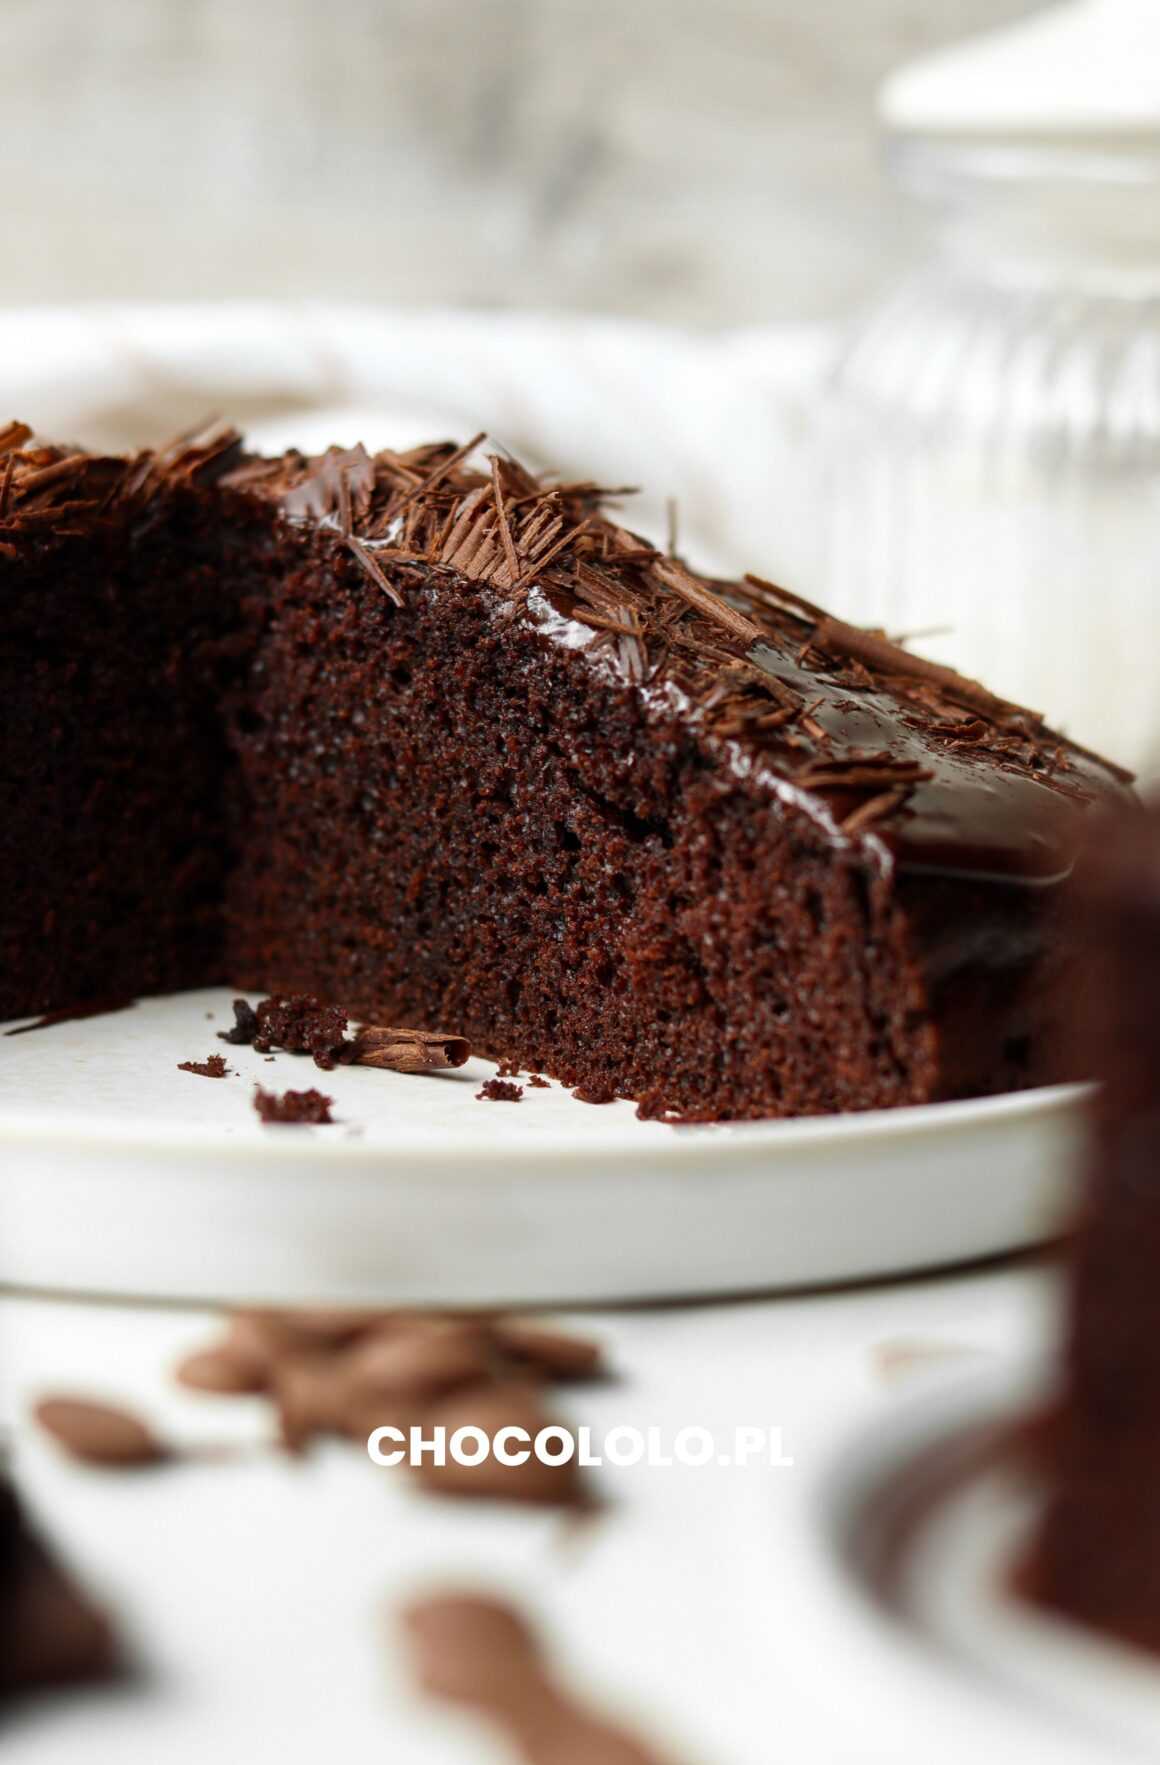 proste ciasto czekoladowe